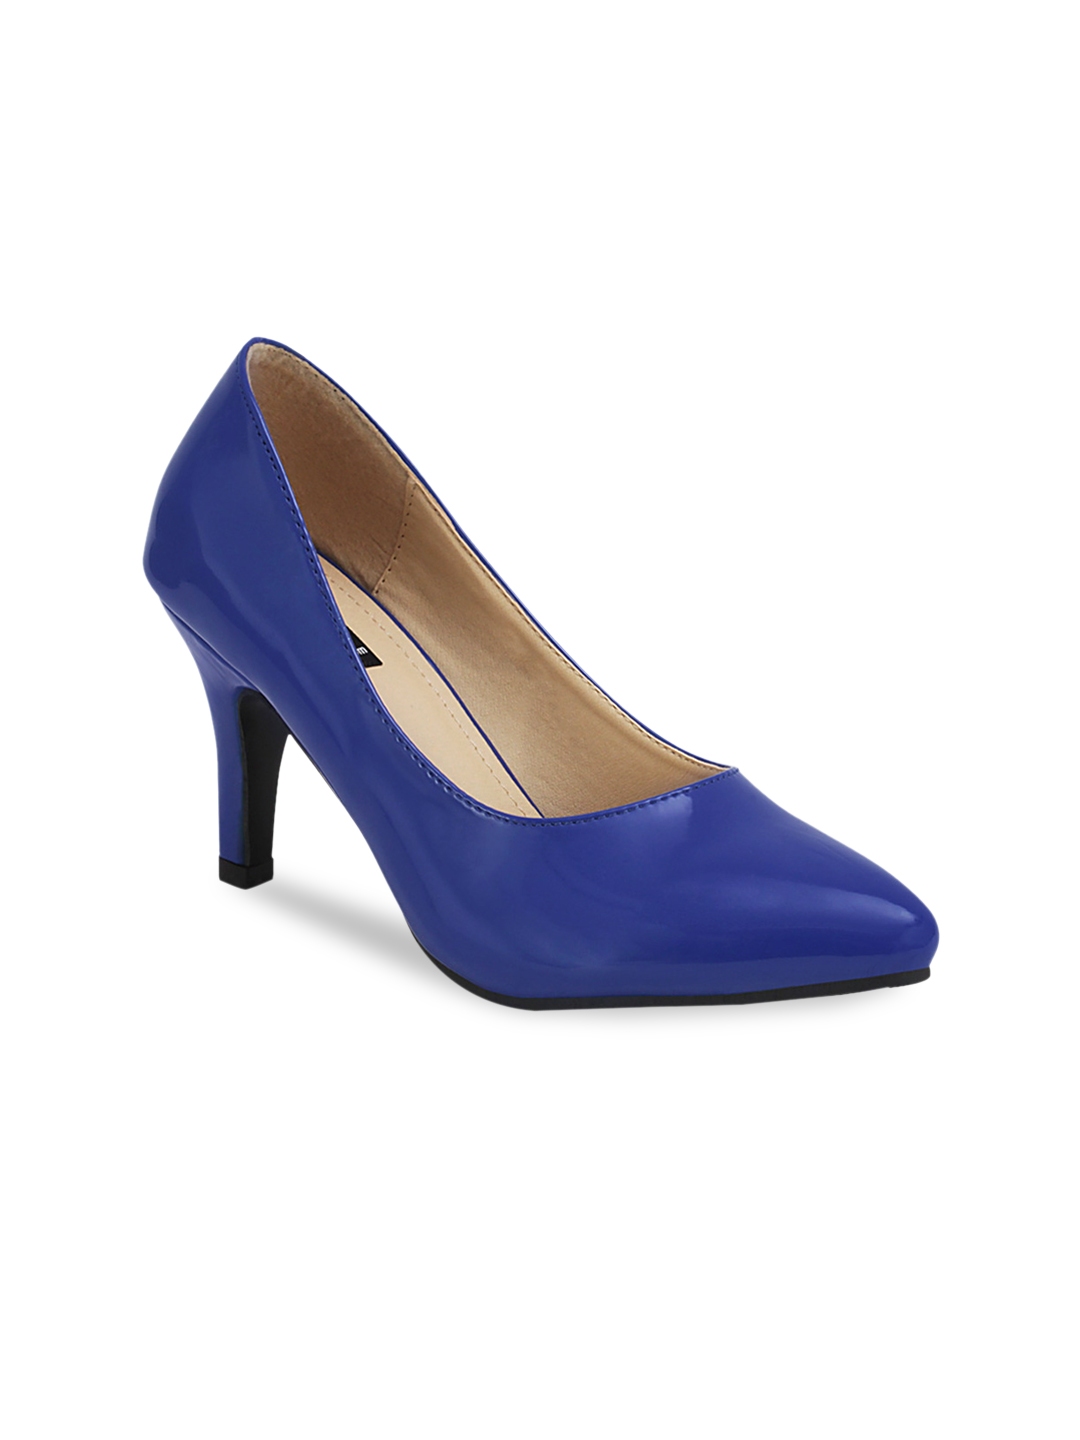 Buy Get Glamr Women Blue Pumps - Heels for Women 529404 | Myntra